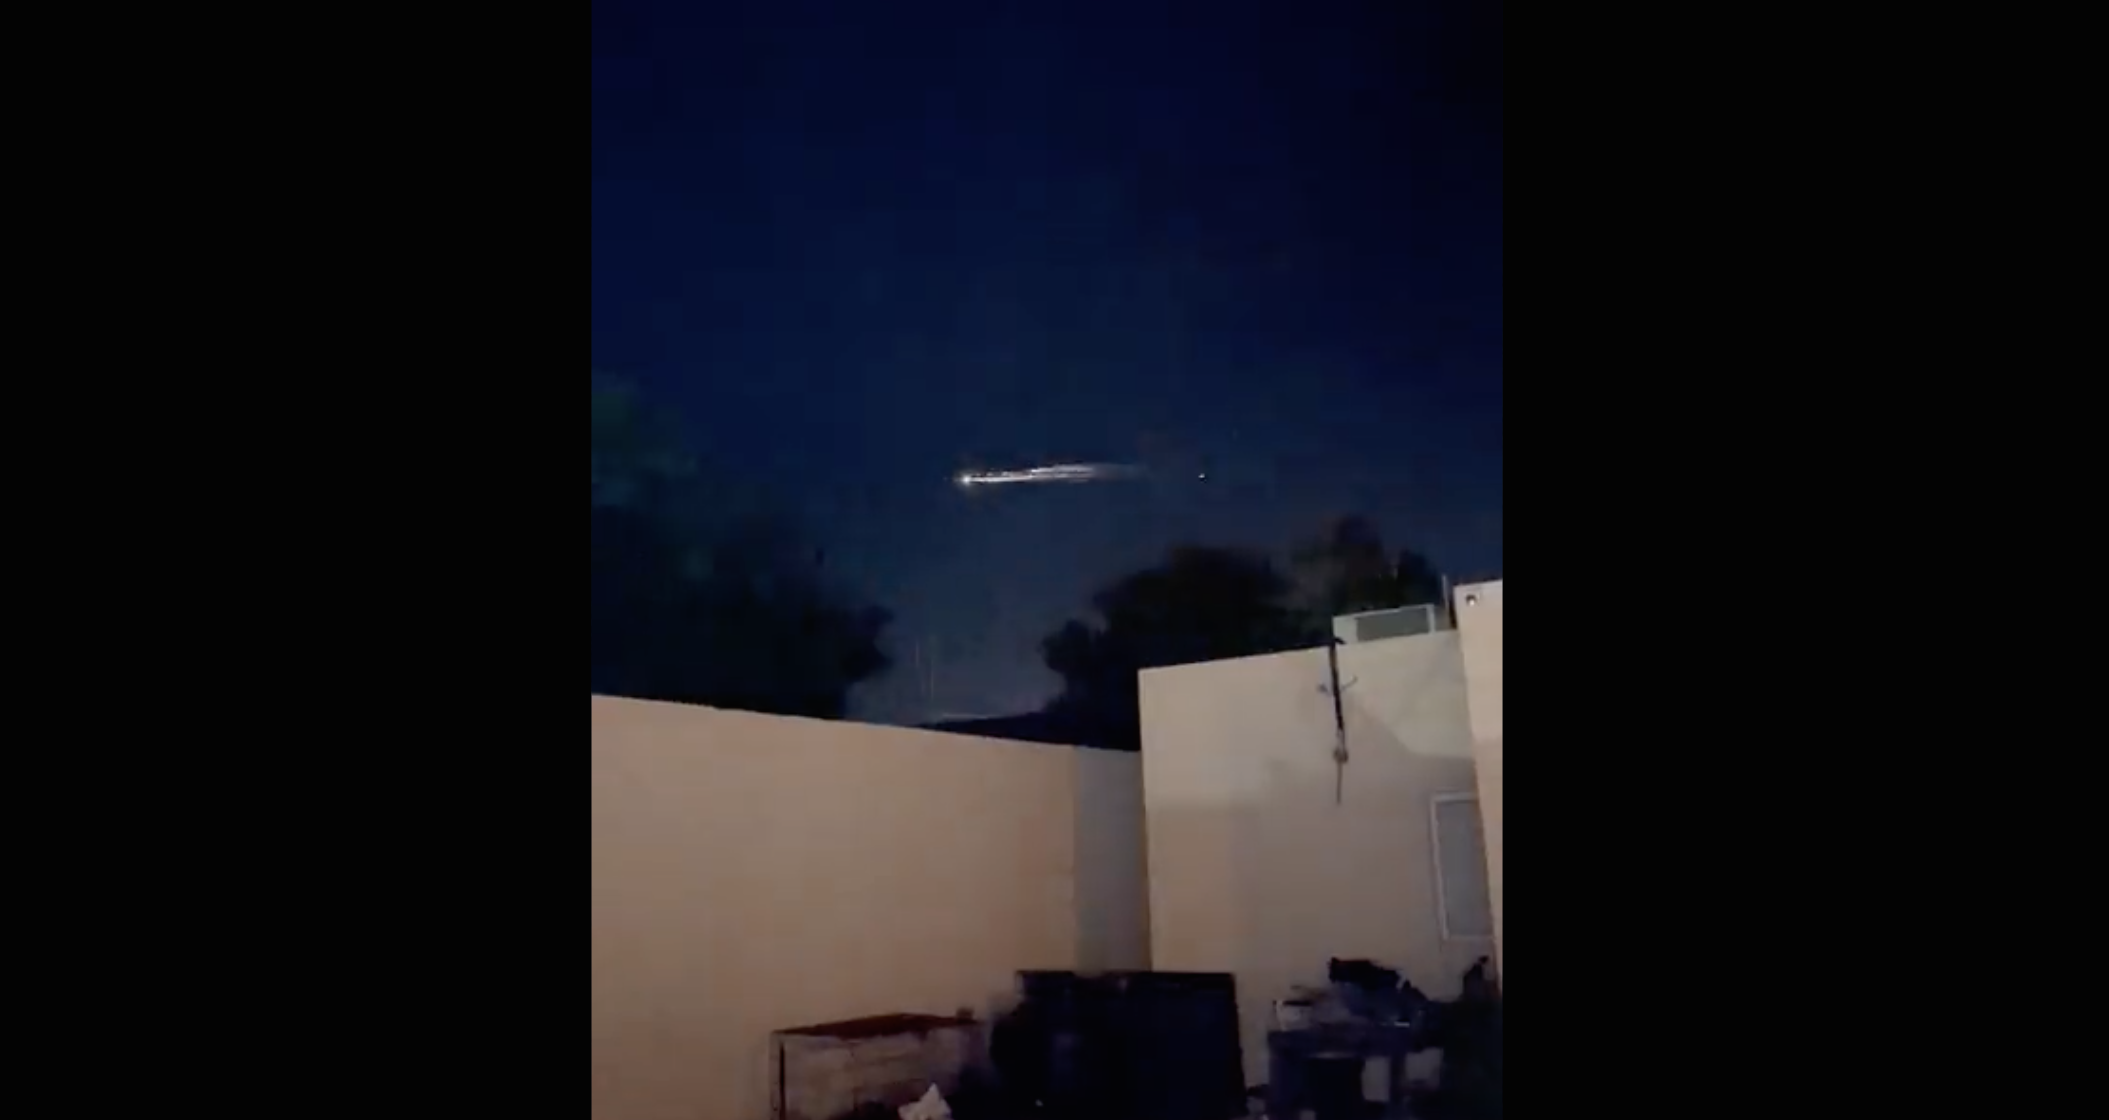 A meteorite? Lights seen in mexico's sky were rocket debris